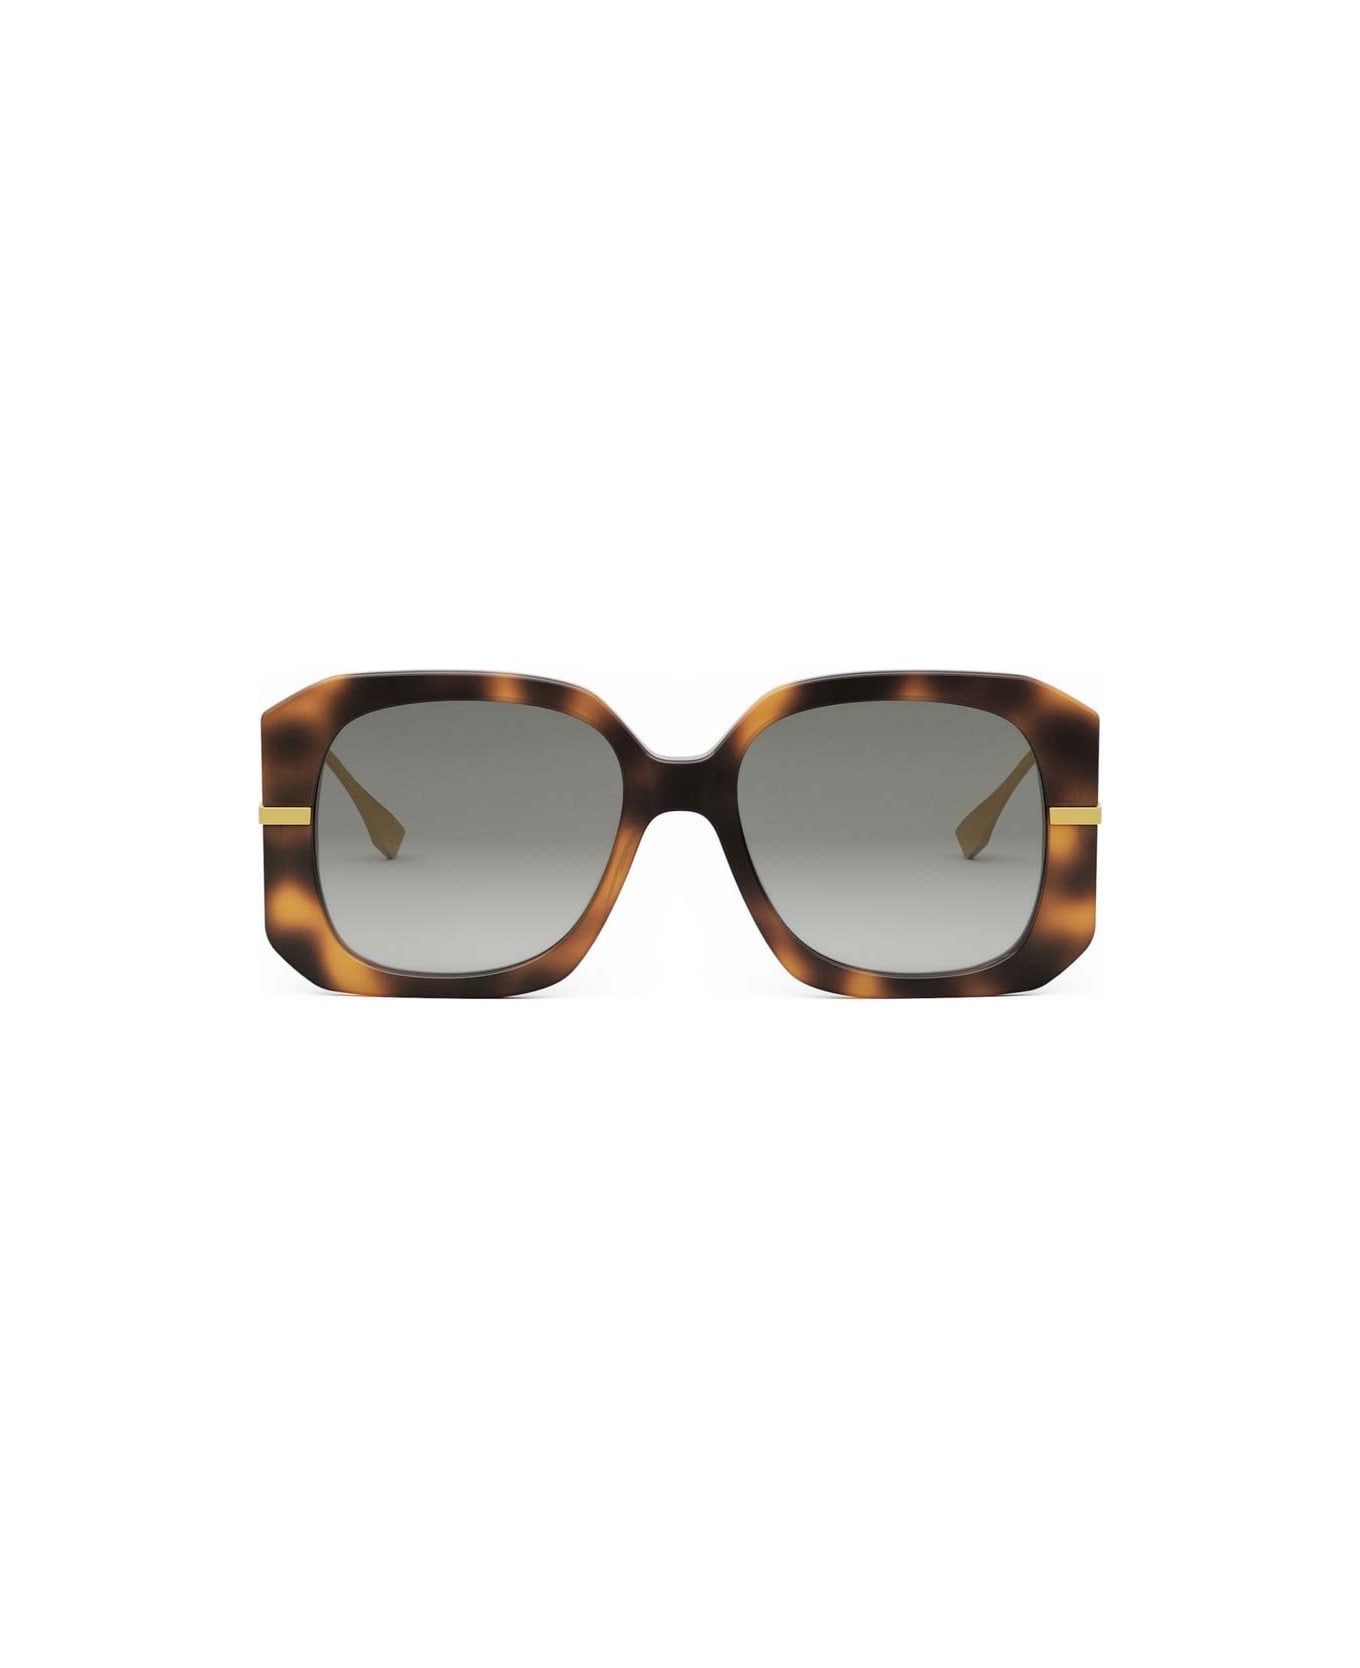 Fendi Eyewear Sunglasses - Havana/Grigio sfumato